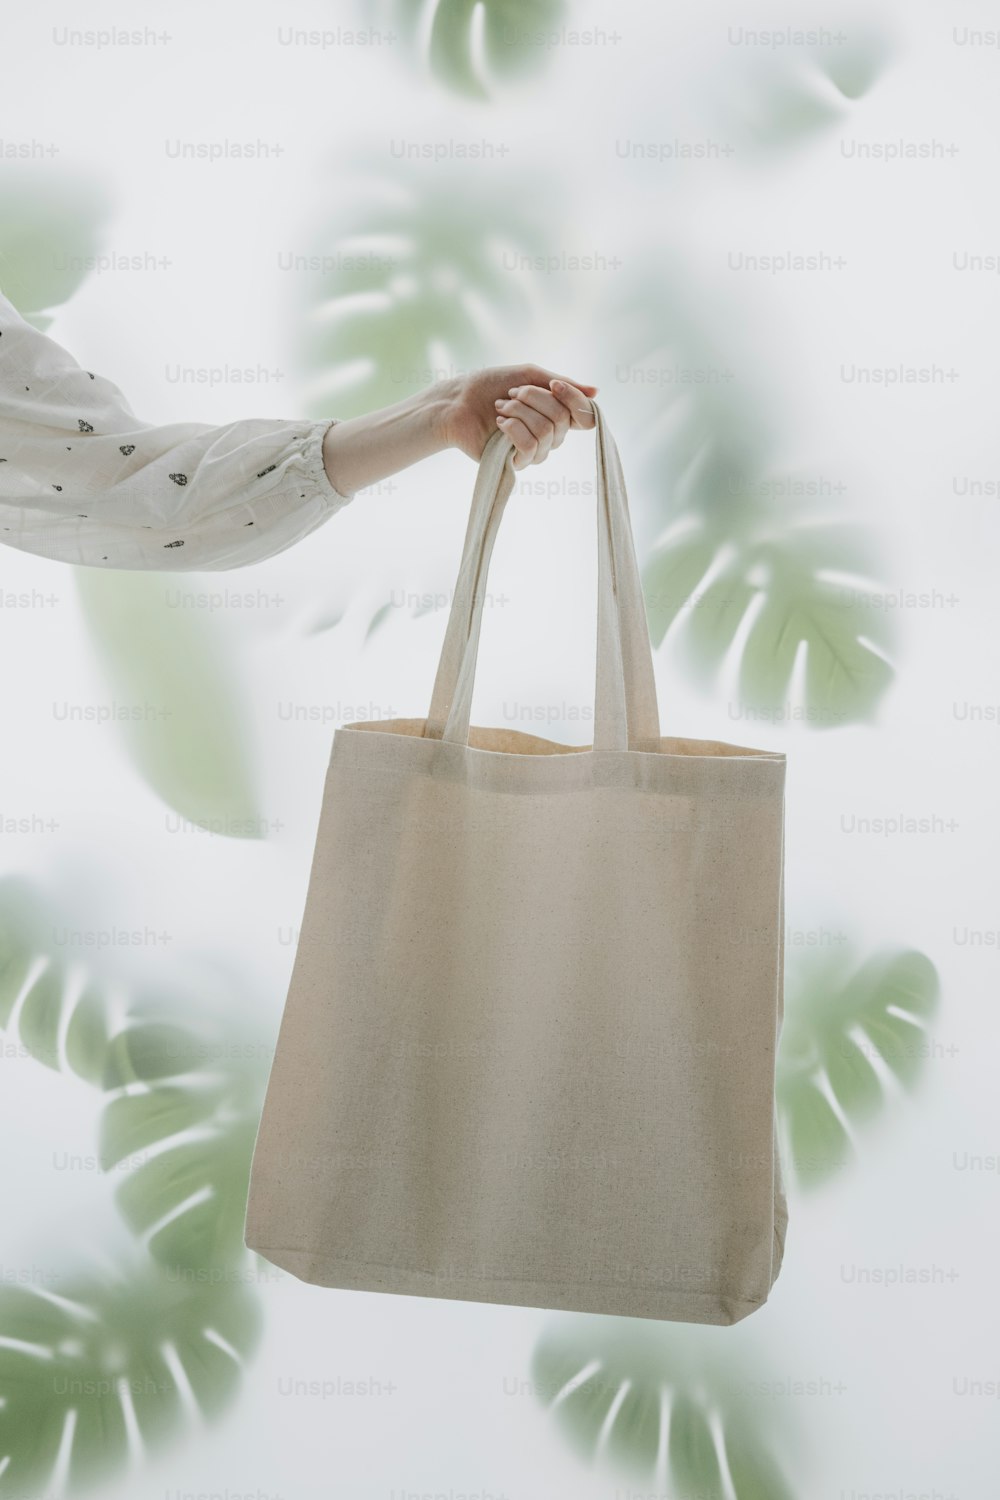 uma pessoa segurando um saco na frente de uma planta